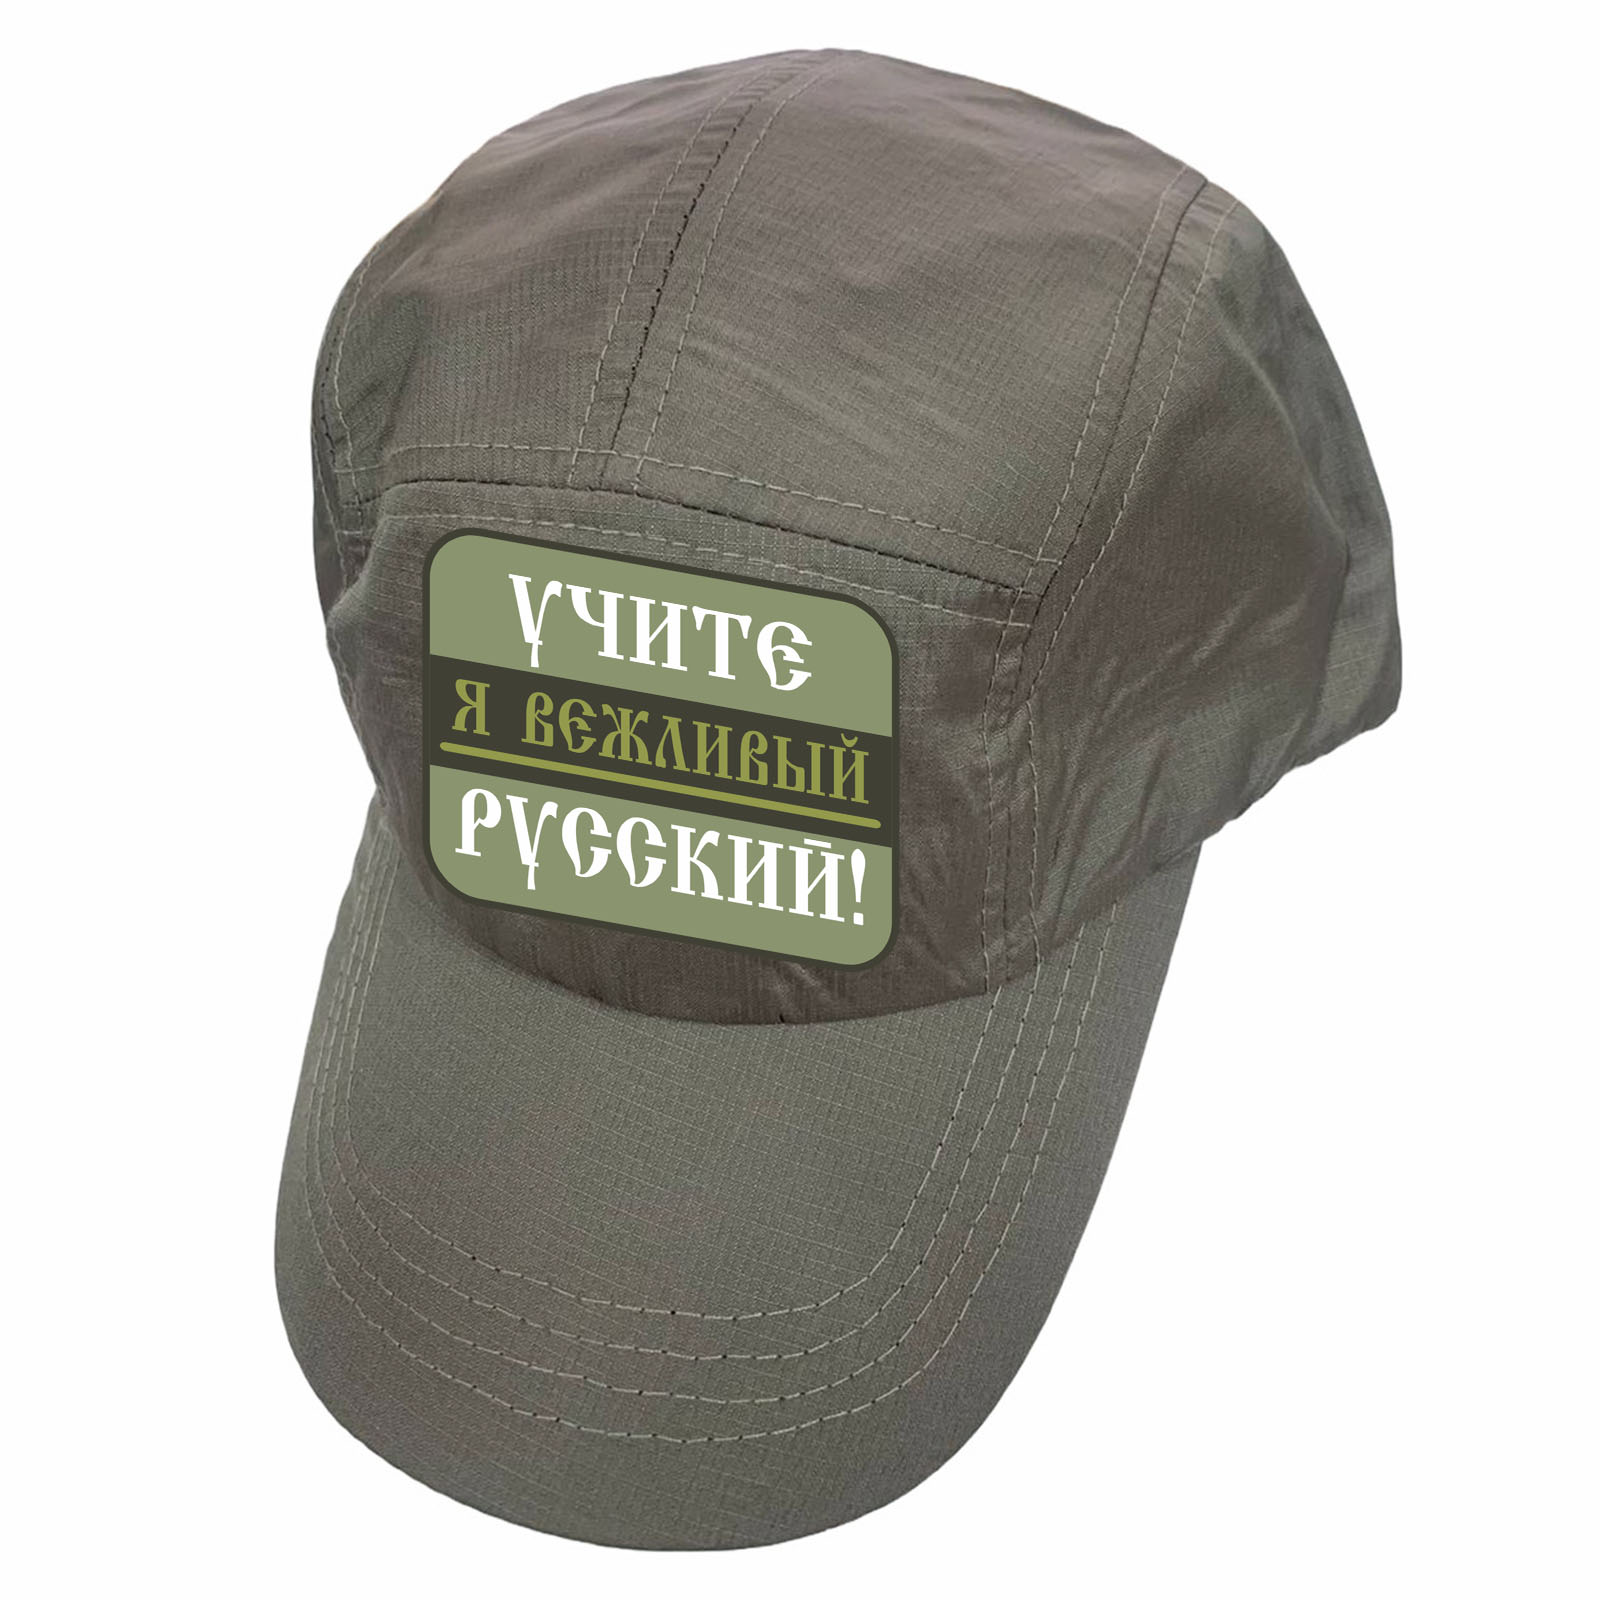 Купить коричневую кепку-пятипанельку с термотрансфером Учите русский онлайн